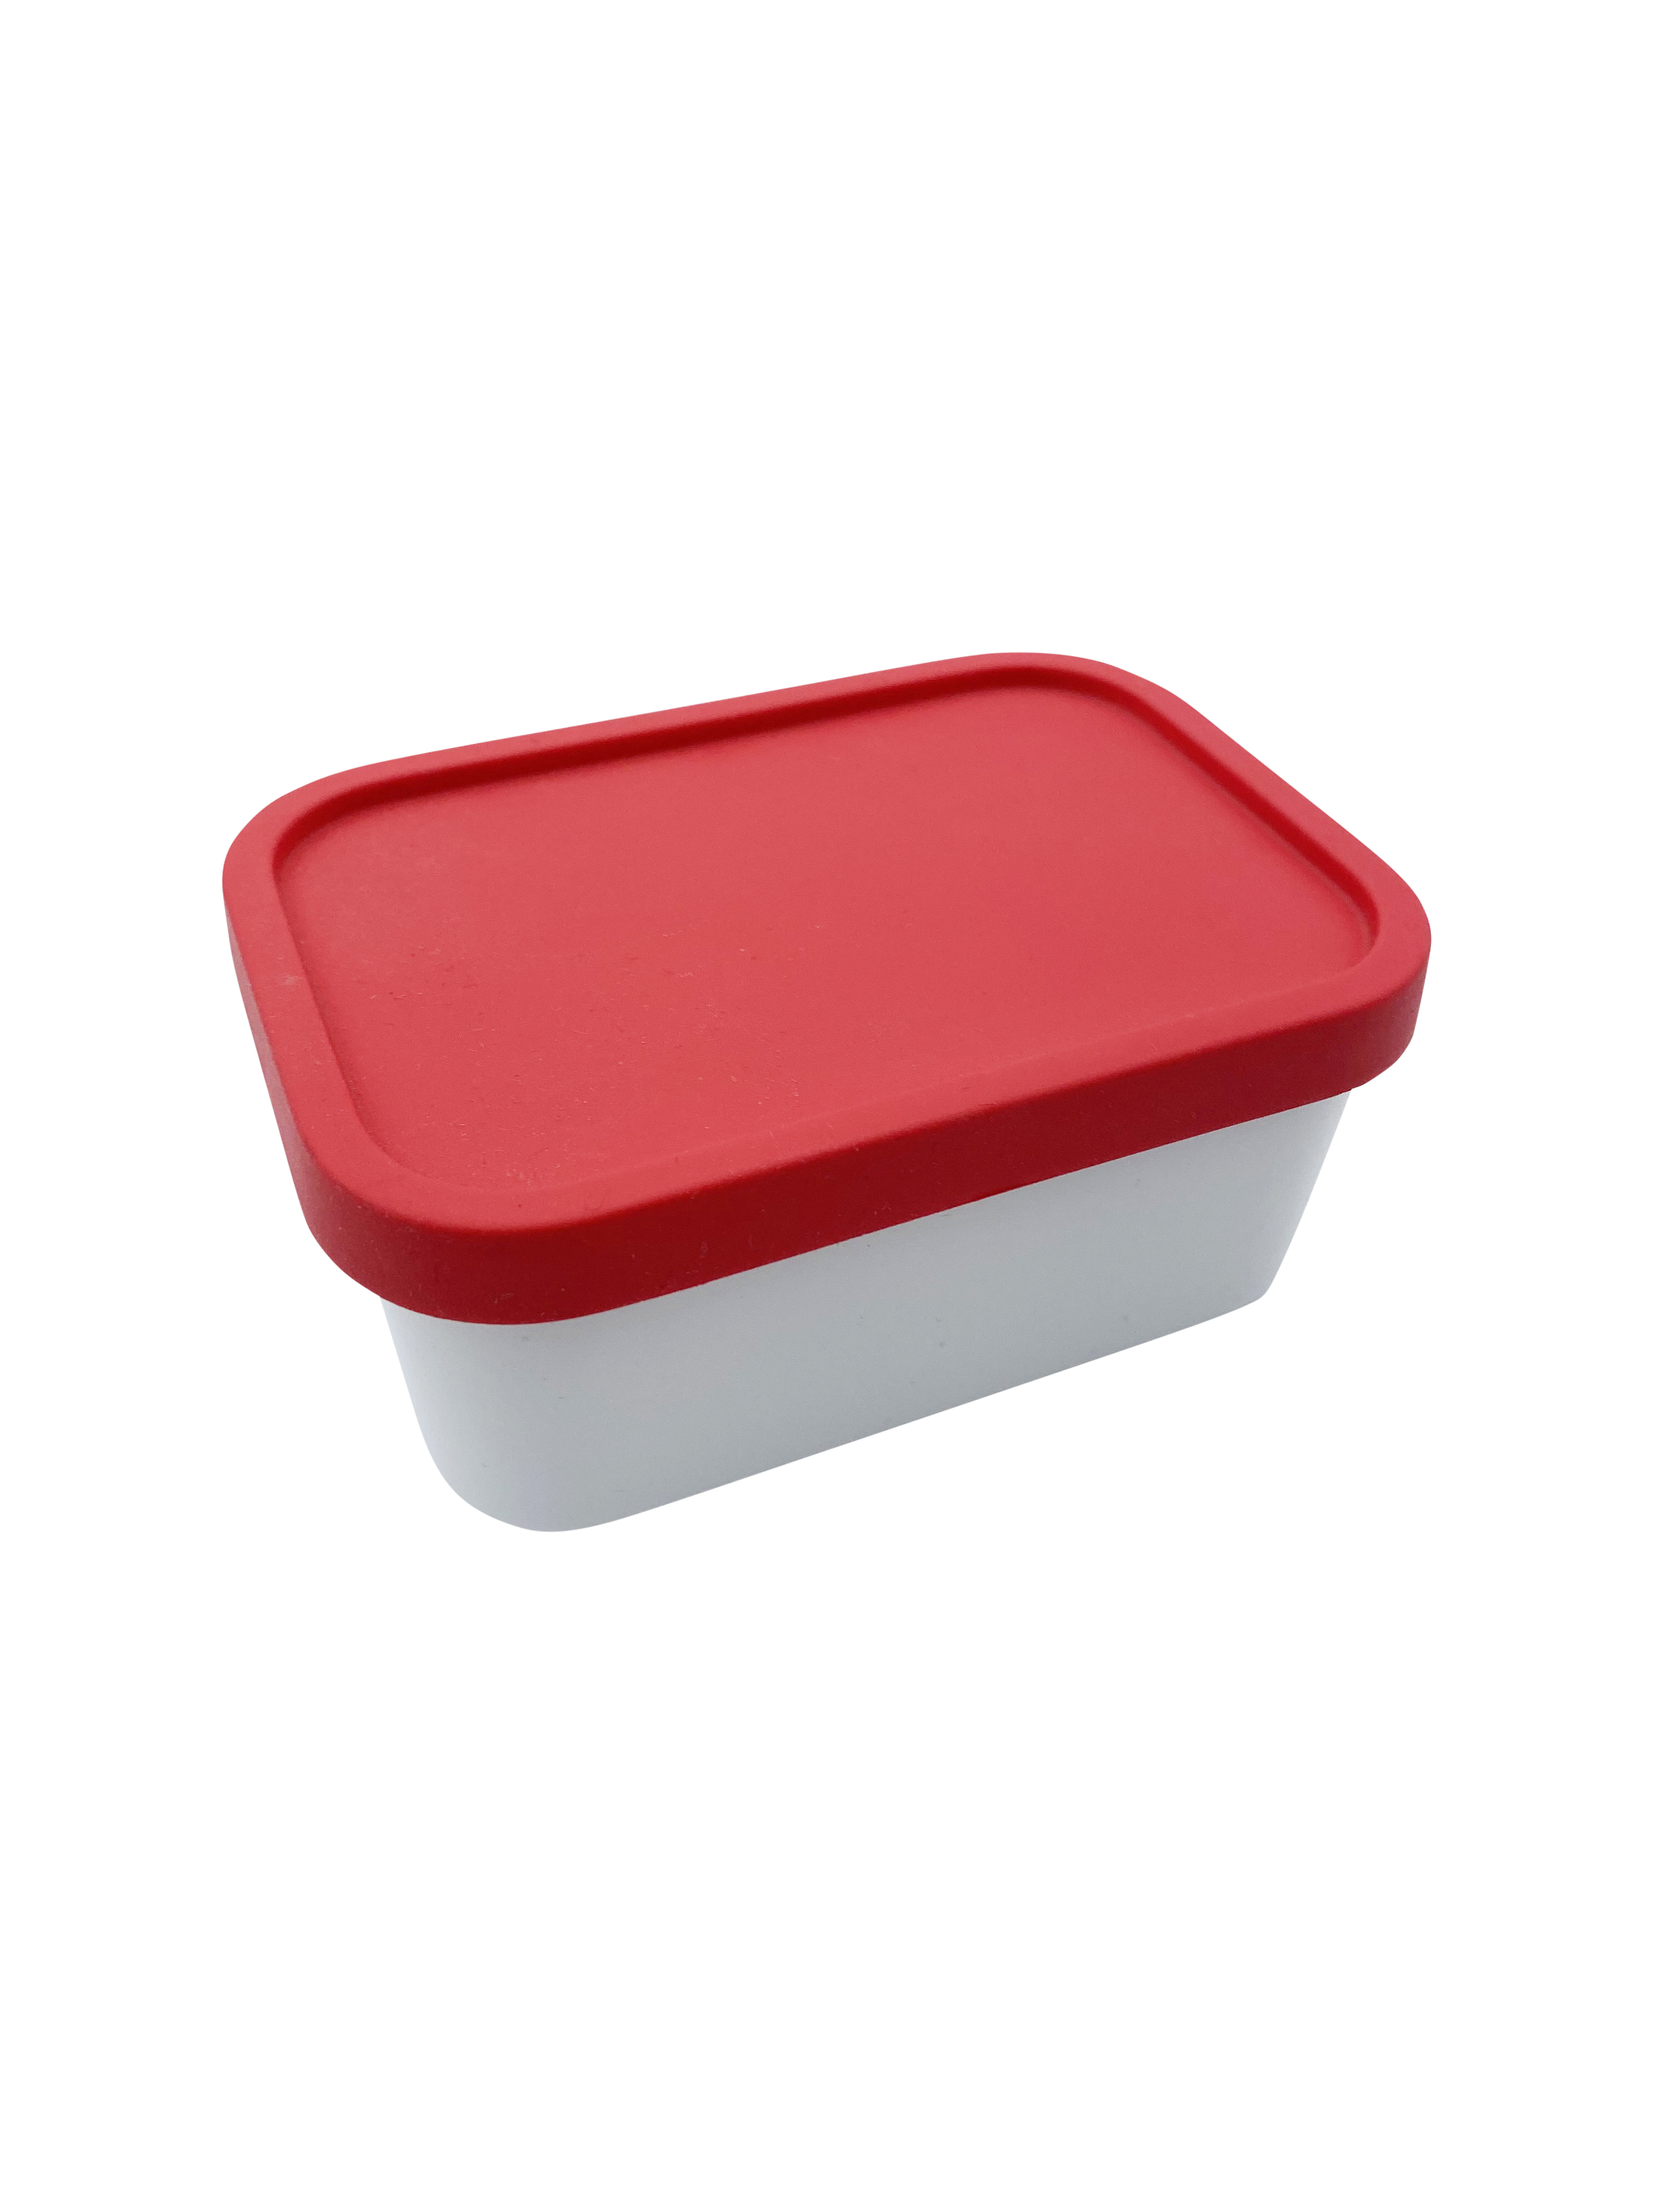 Ersatz-Einsatz für die Bento-Lunchboxen Take a Break, Ersatz Mini-Box 